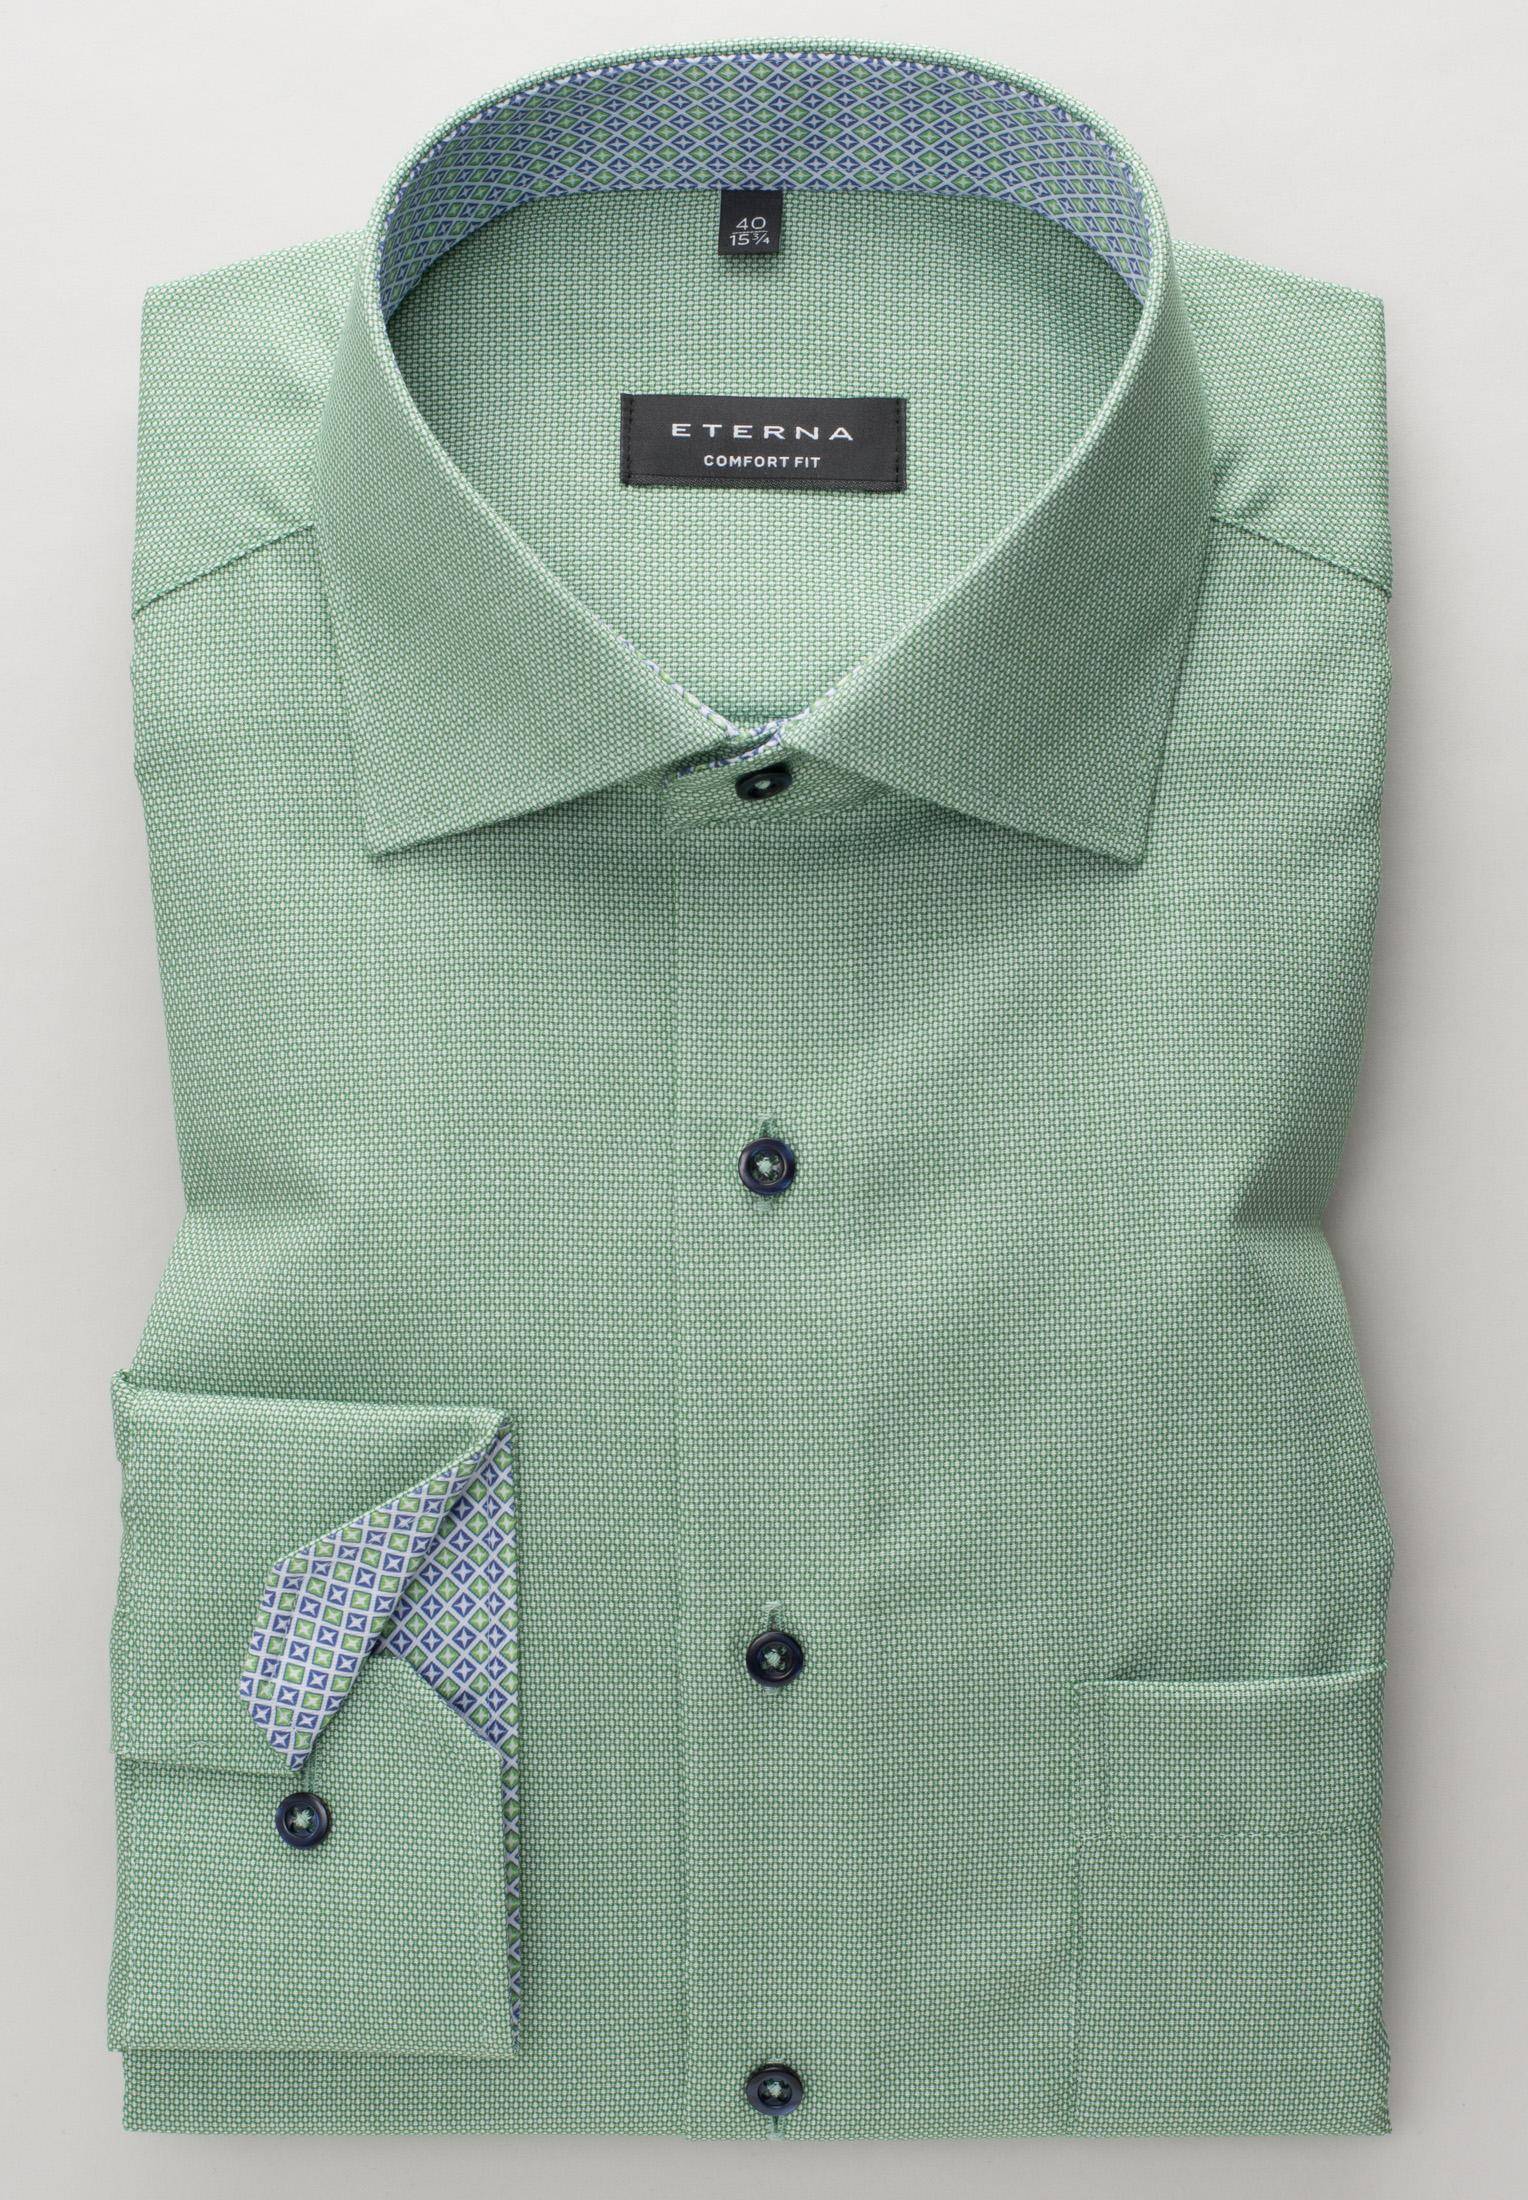 Мужская рубашка ETERNA, зеленая, цвет зеленый, размер 58 - фото 3